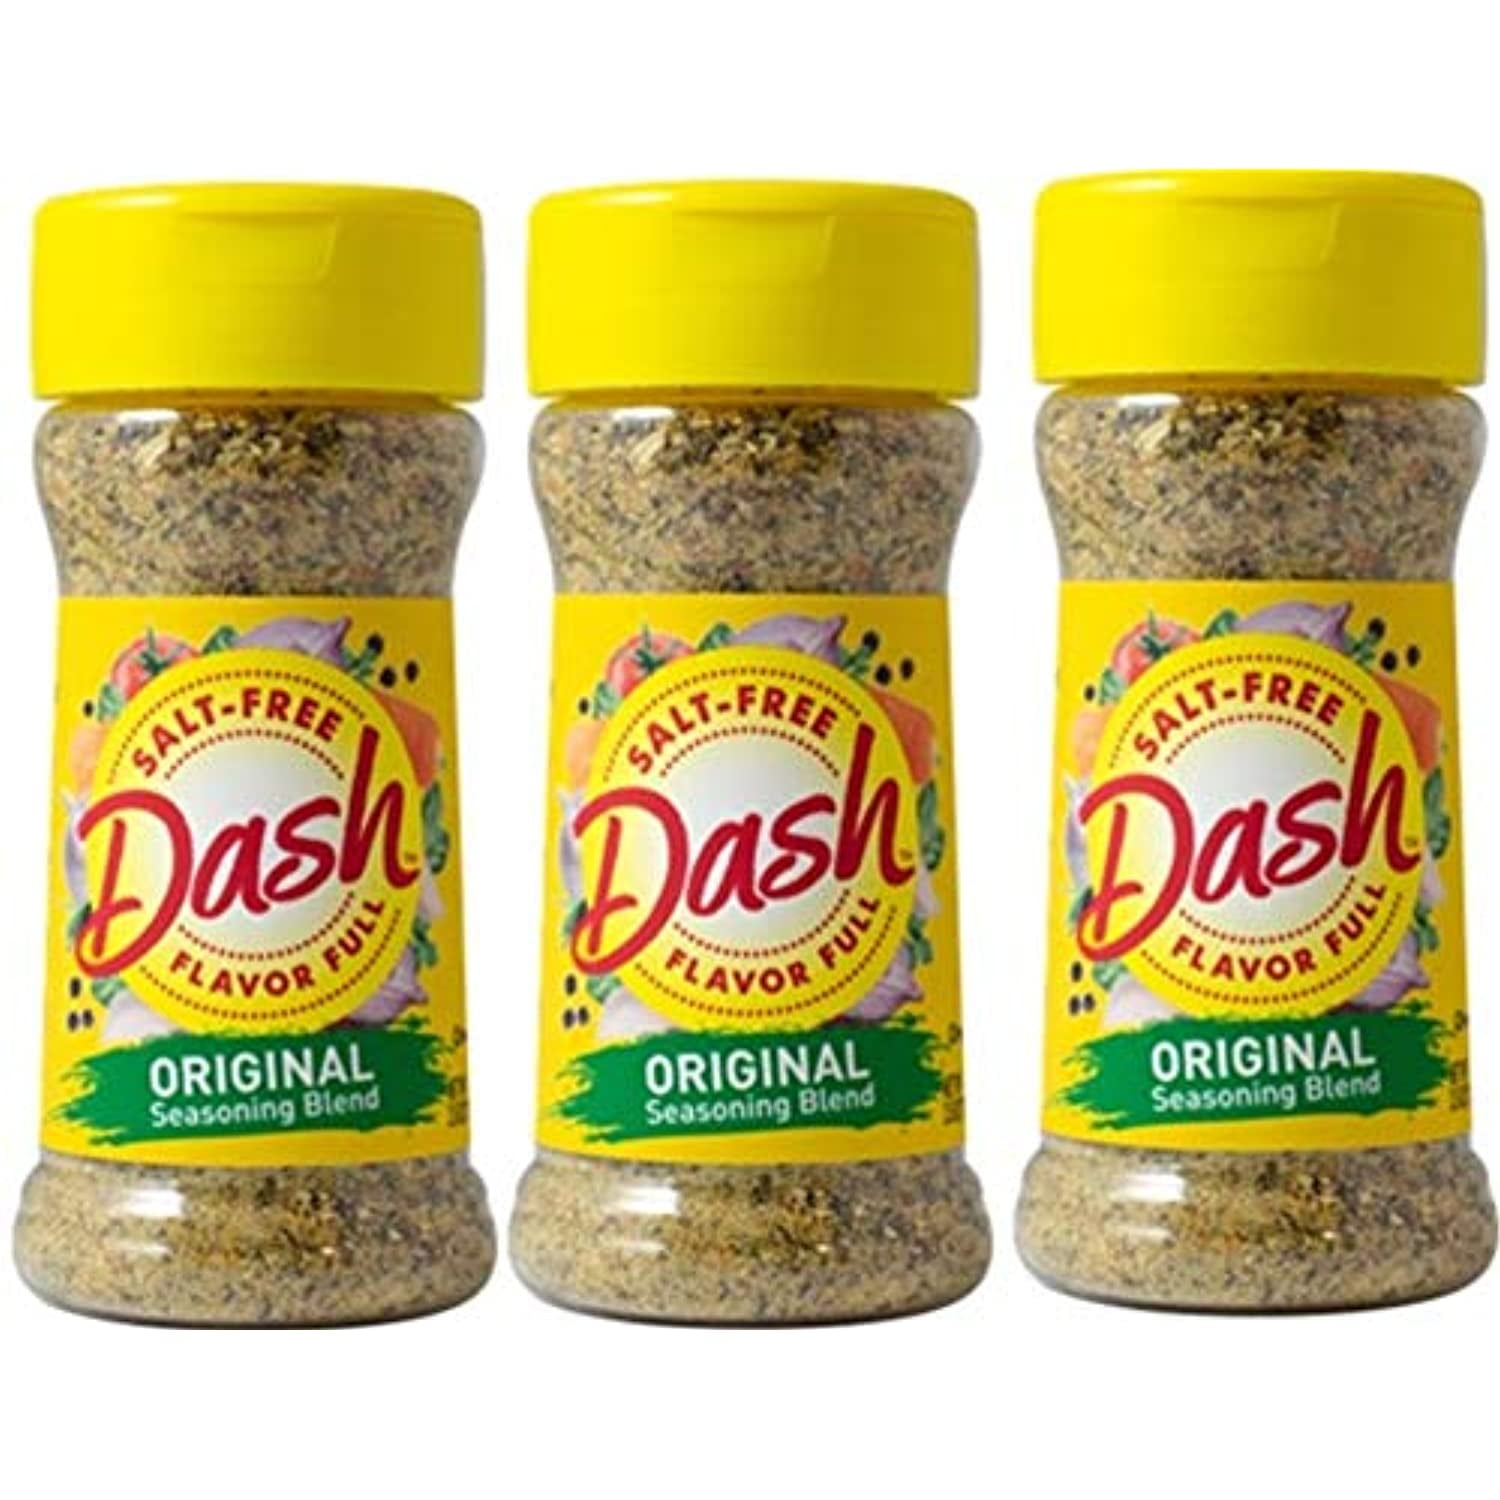 Reducing Sodium with 14 Varieties of Mrs. Dash Seasonings